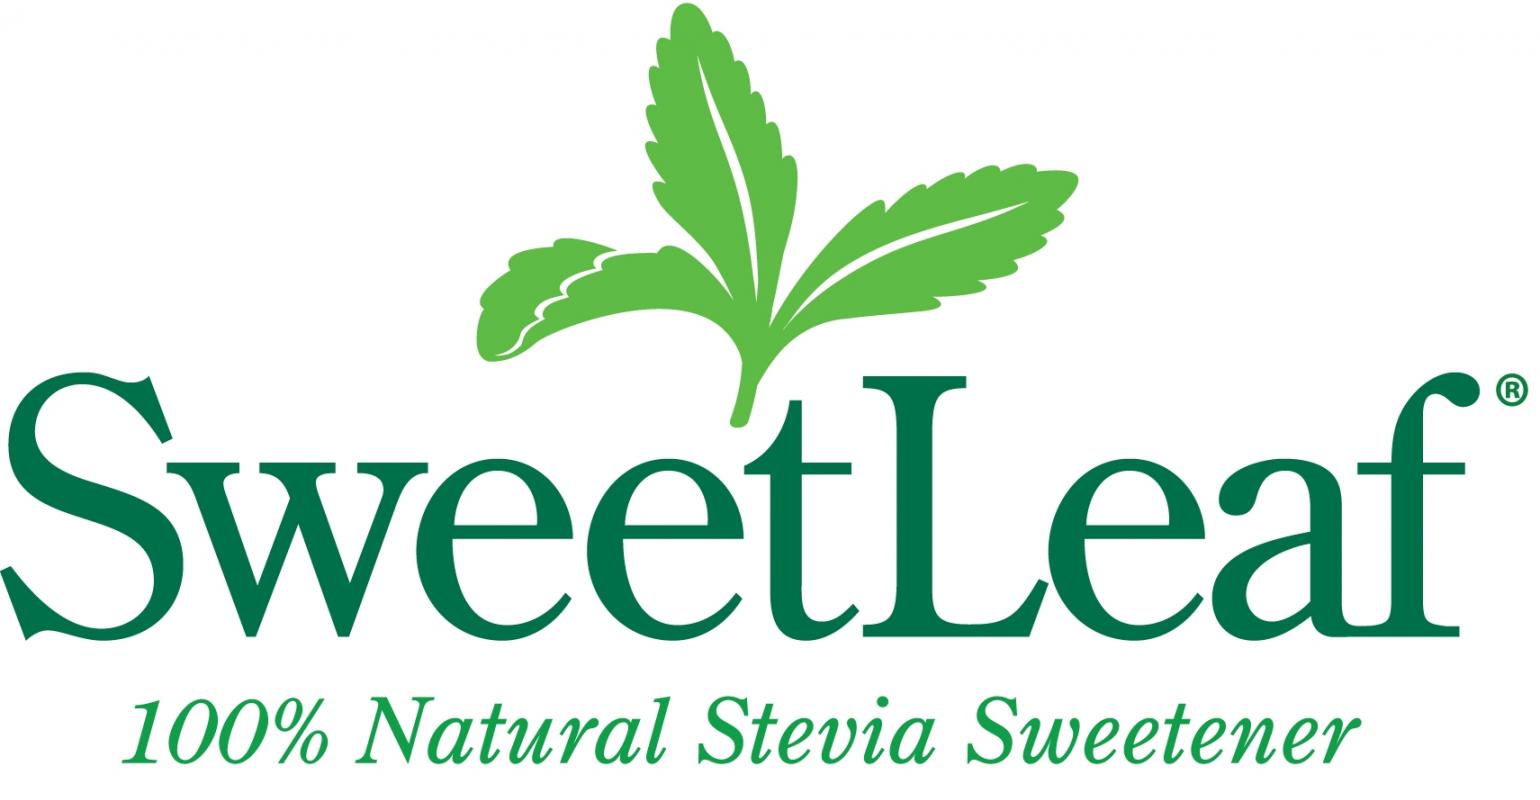 Đường ăn kiêng cỏ ngọt 0 Calories Sweetleaf Stevia 60ml xuất xứ Mỹ - chiết xuất tự nhiên - Sweetdrops hương vị Chocolate